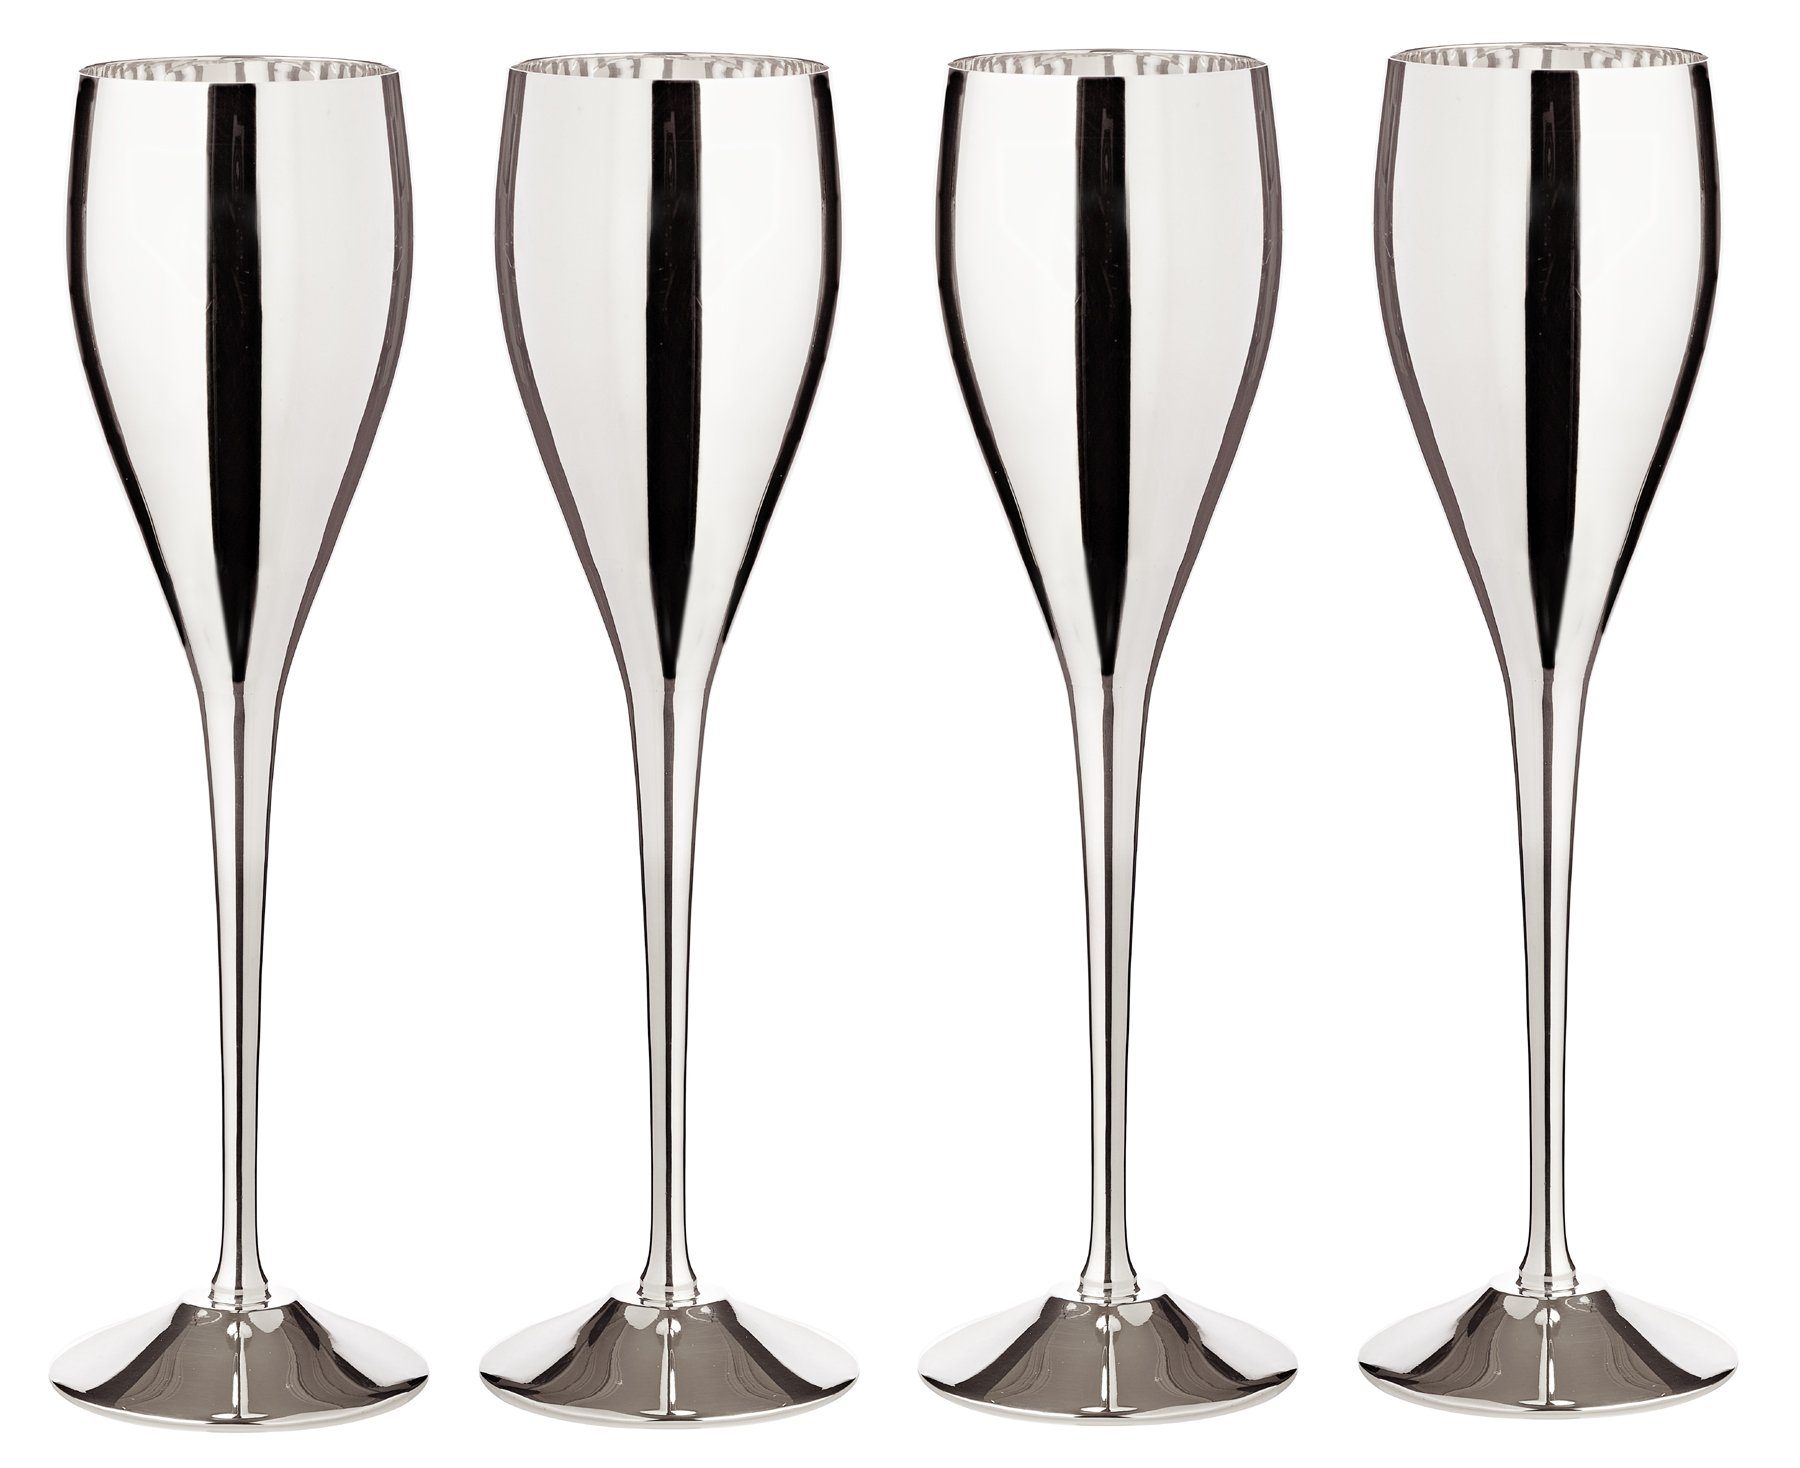 EDZARD Sektglas 2er-Set Dodo, Messing, Sektflöten mit Glanz-Finish, Trinkgläser-Set für Champagner, Sektkelche mit Füllmenge 200 ml, Höhe 23 cm, versilbert